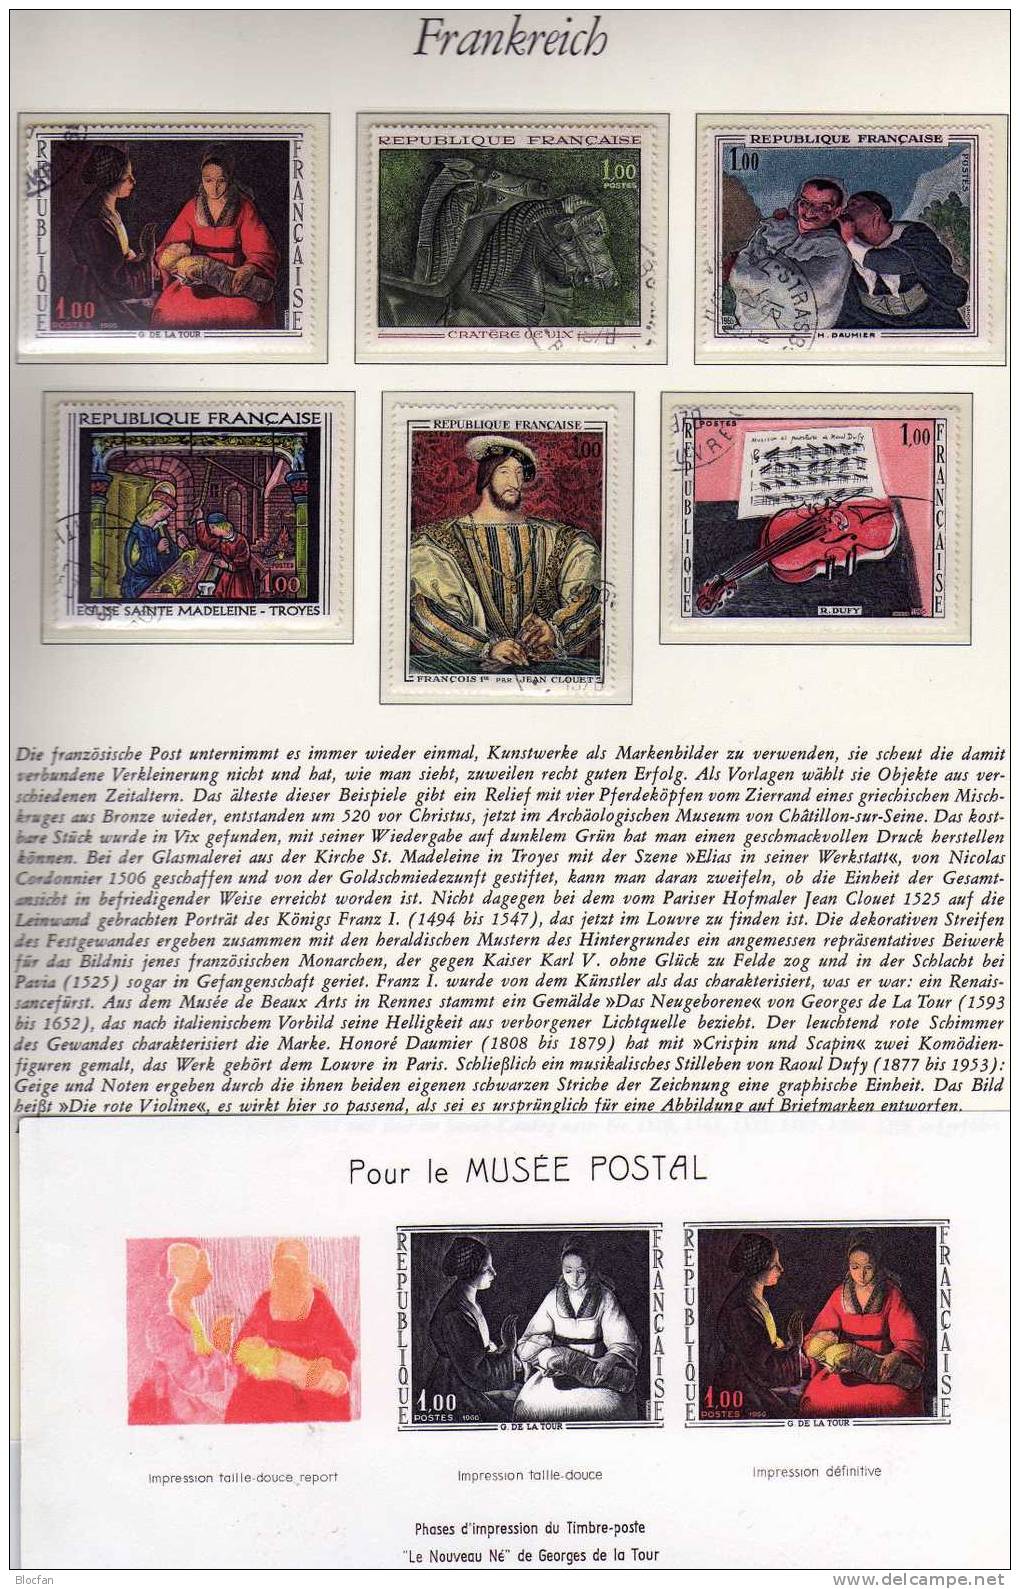 6x Gemälde Und Kunst 1965 Frankreich 1529 Bis 1598 Plus Block I/66 O 20€ Verschiedener Maler Set+ Sheet From France - Cuadros